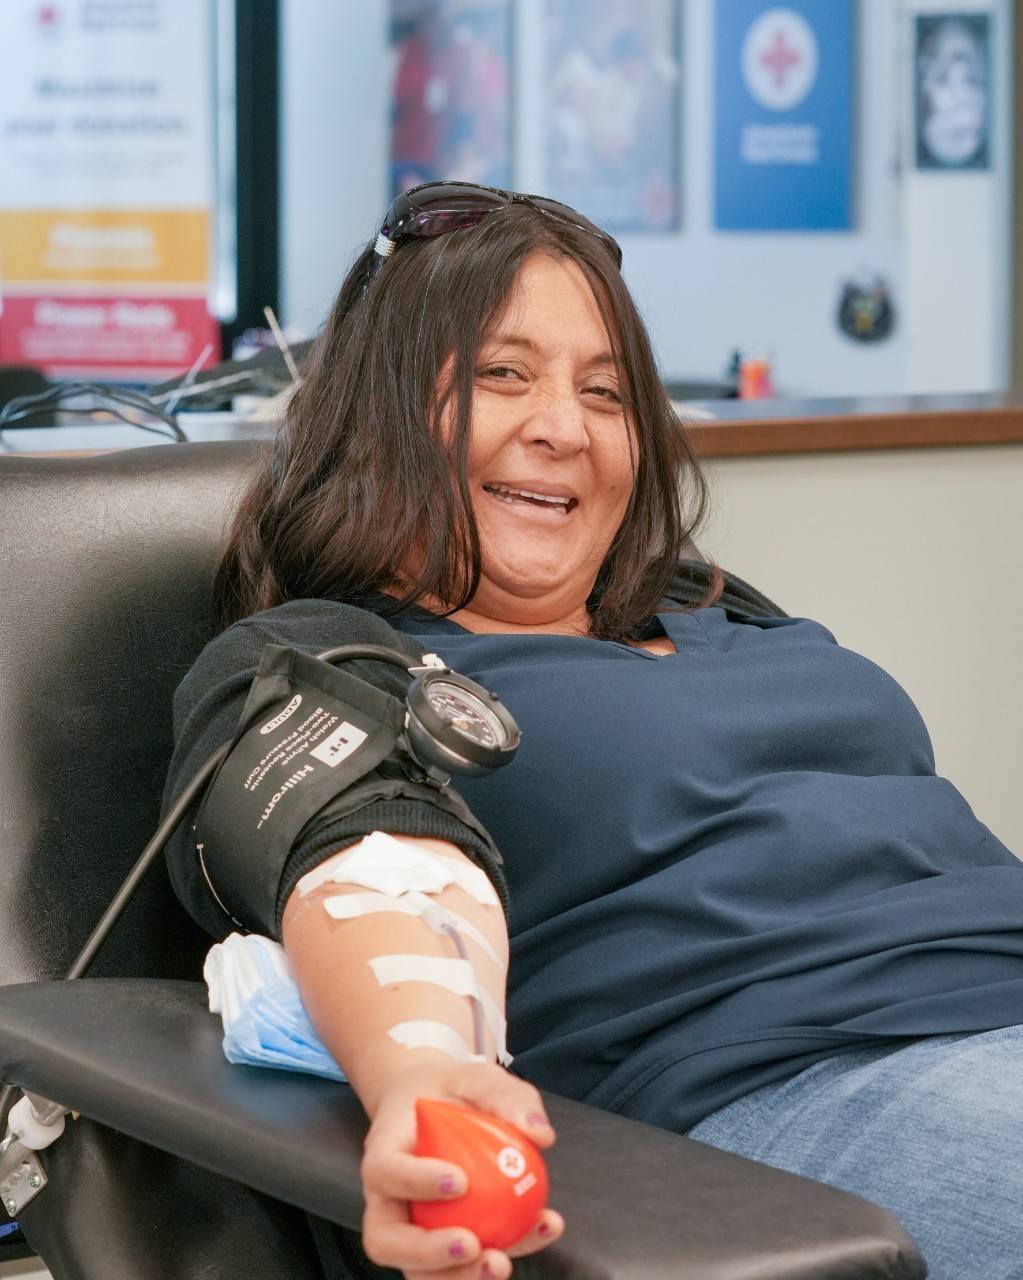 Eylin Cerritos recuerda su infancia en El Salvador, en donde la donación de sangre era algo que convocaba a toda la comunidad.